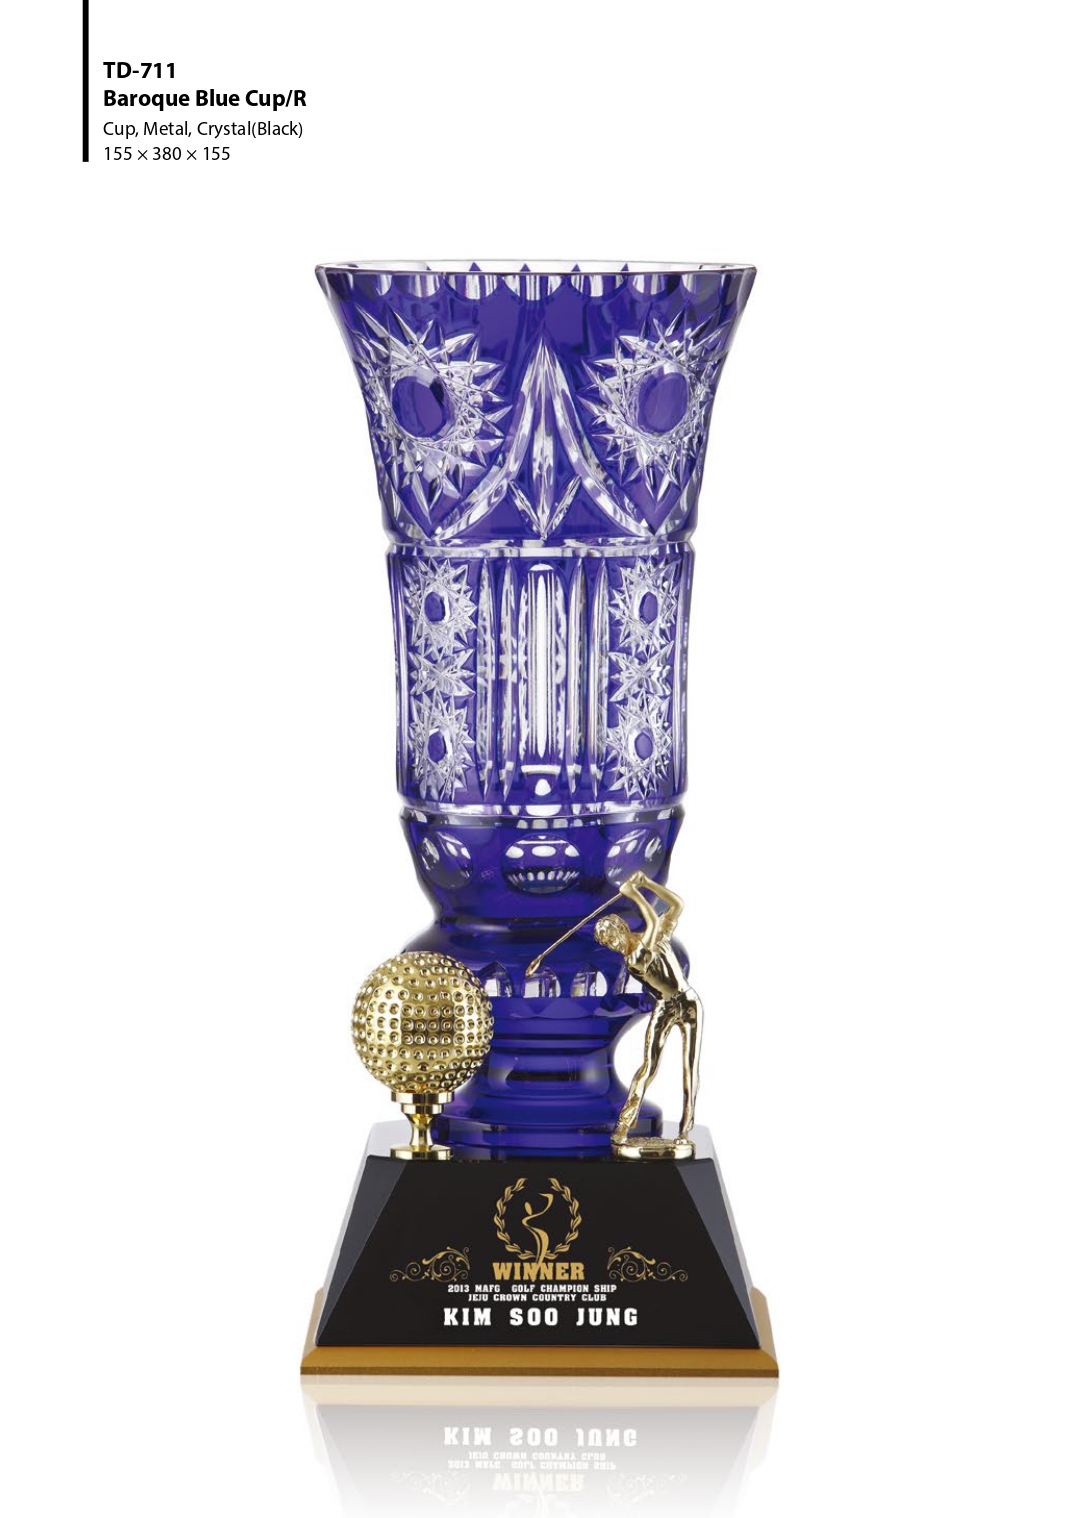 KLPK47057 Baroque Blue Cup/R 위너페 크리스탈컵 상패 트로피 판촉물 제작 케이엘피코리아